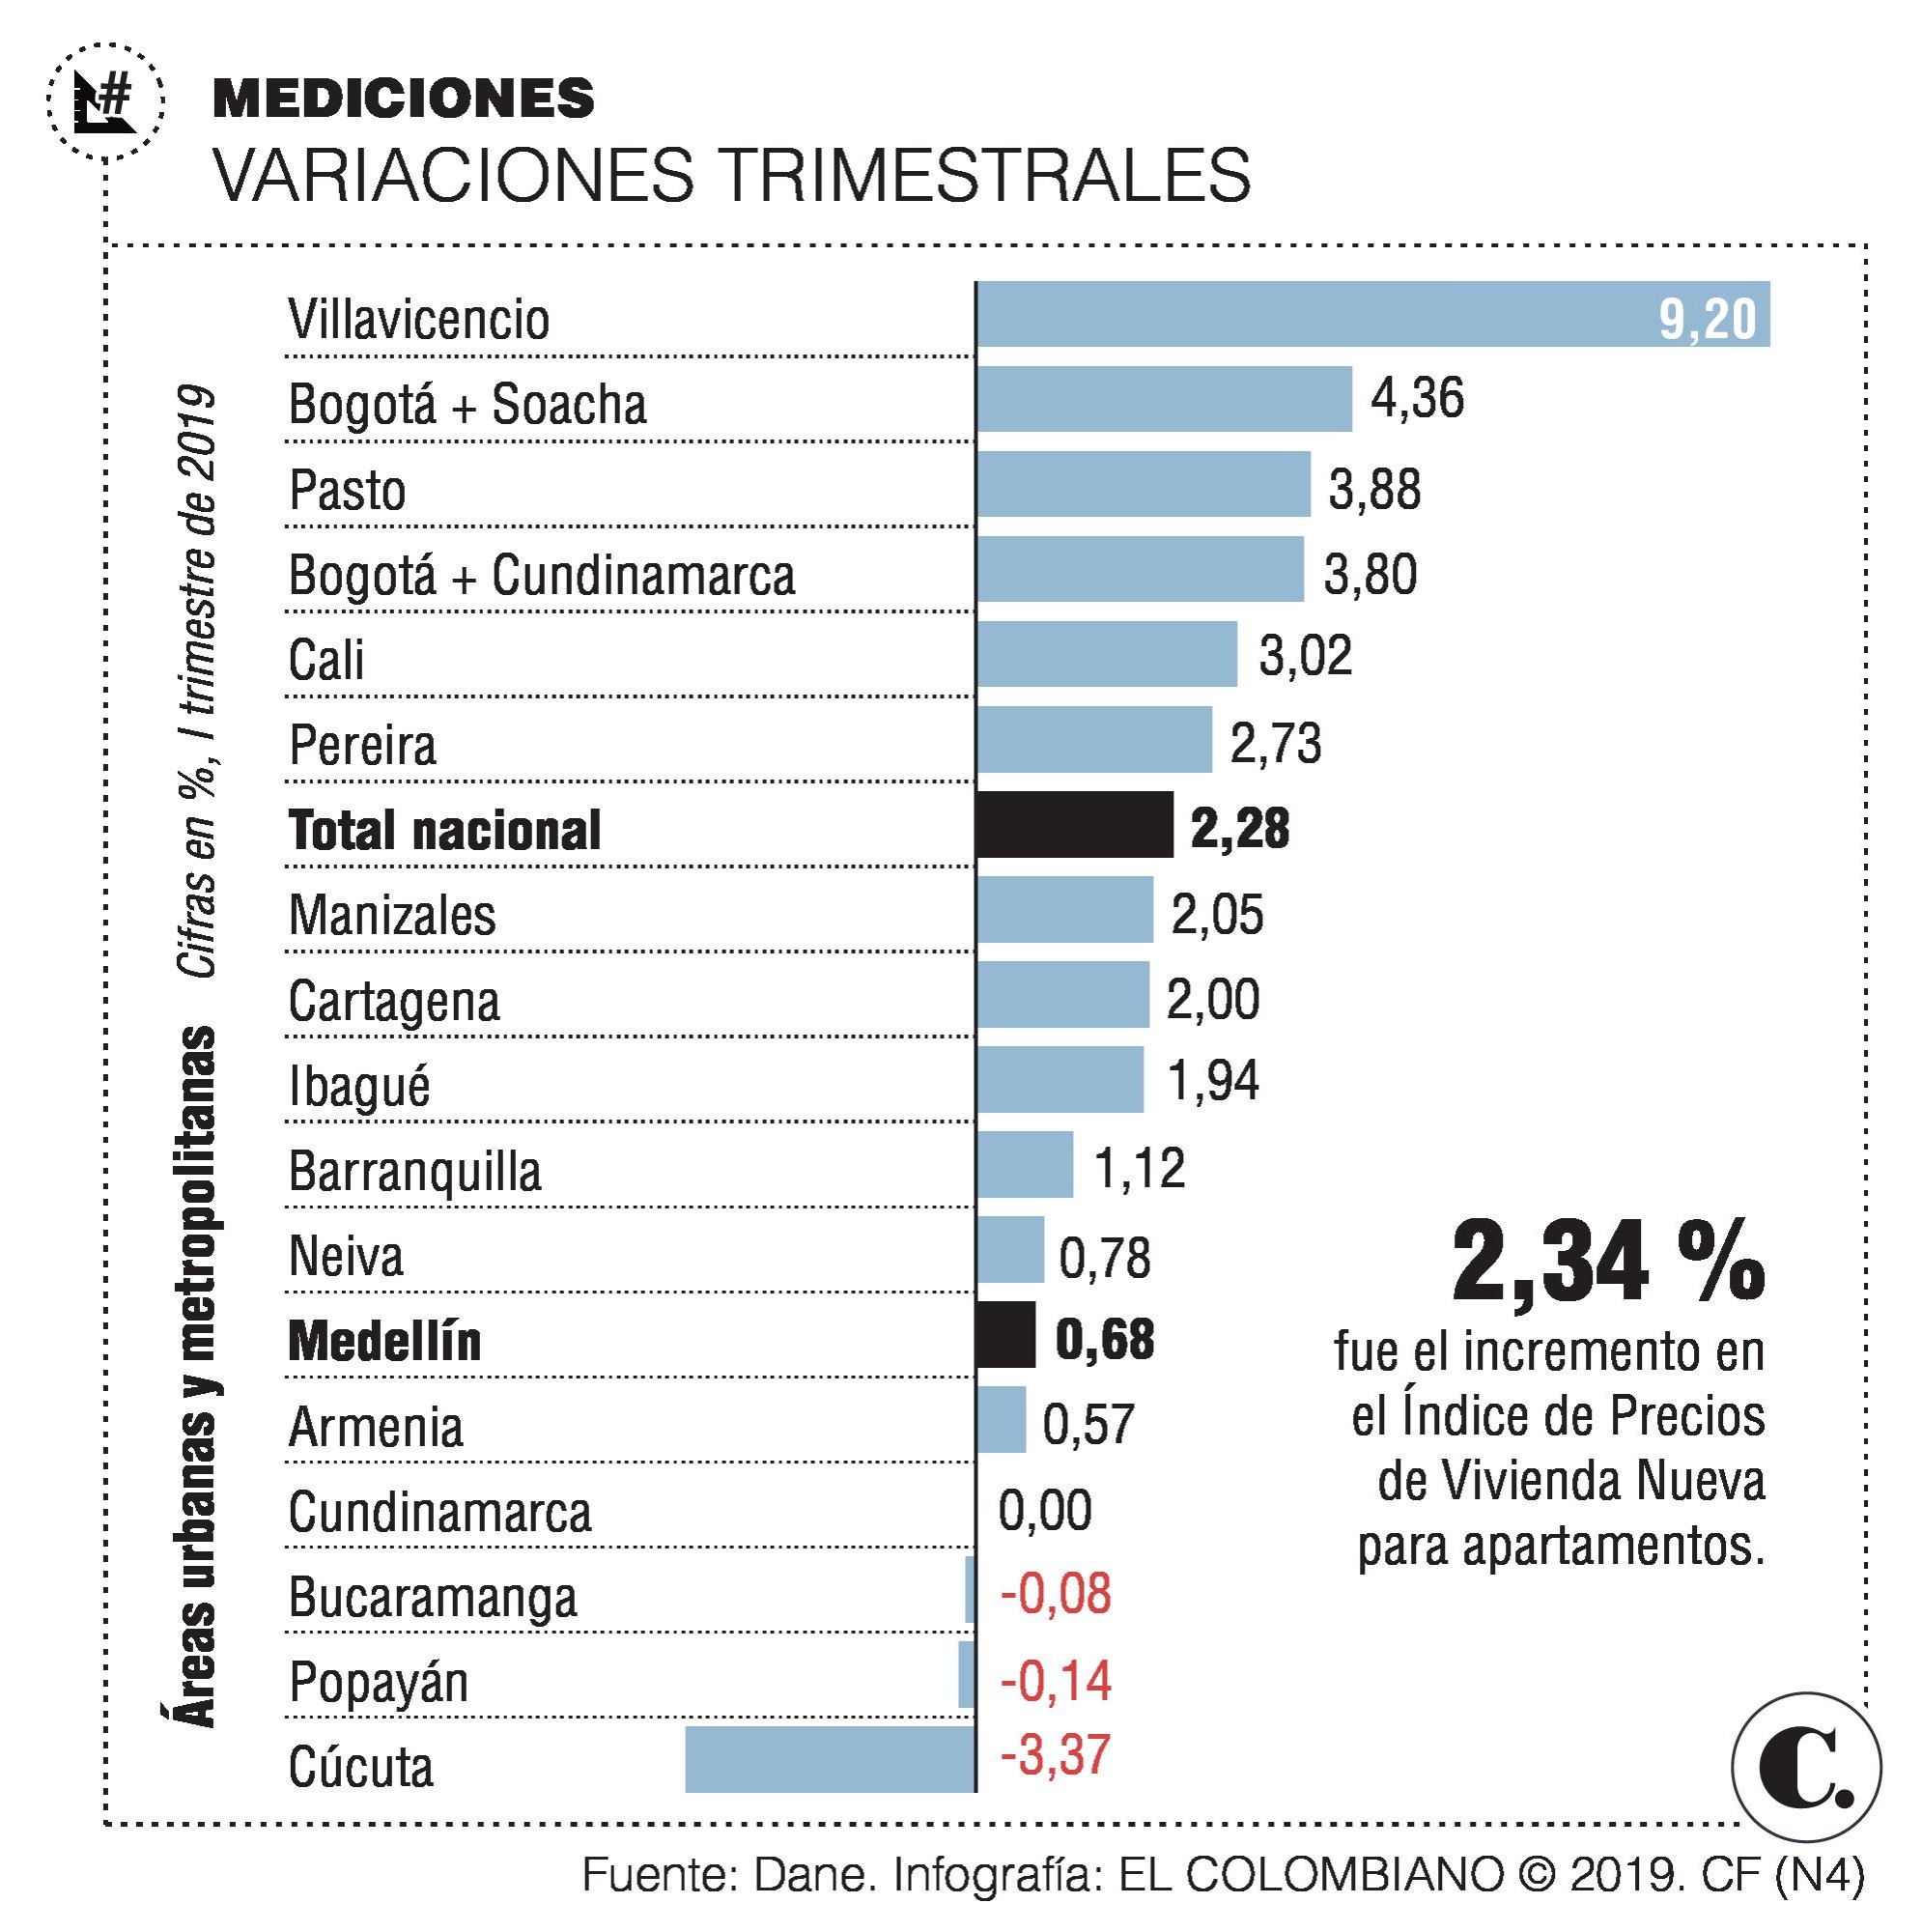 Vivienda nueva en Medellín se encareció 0,68 % 